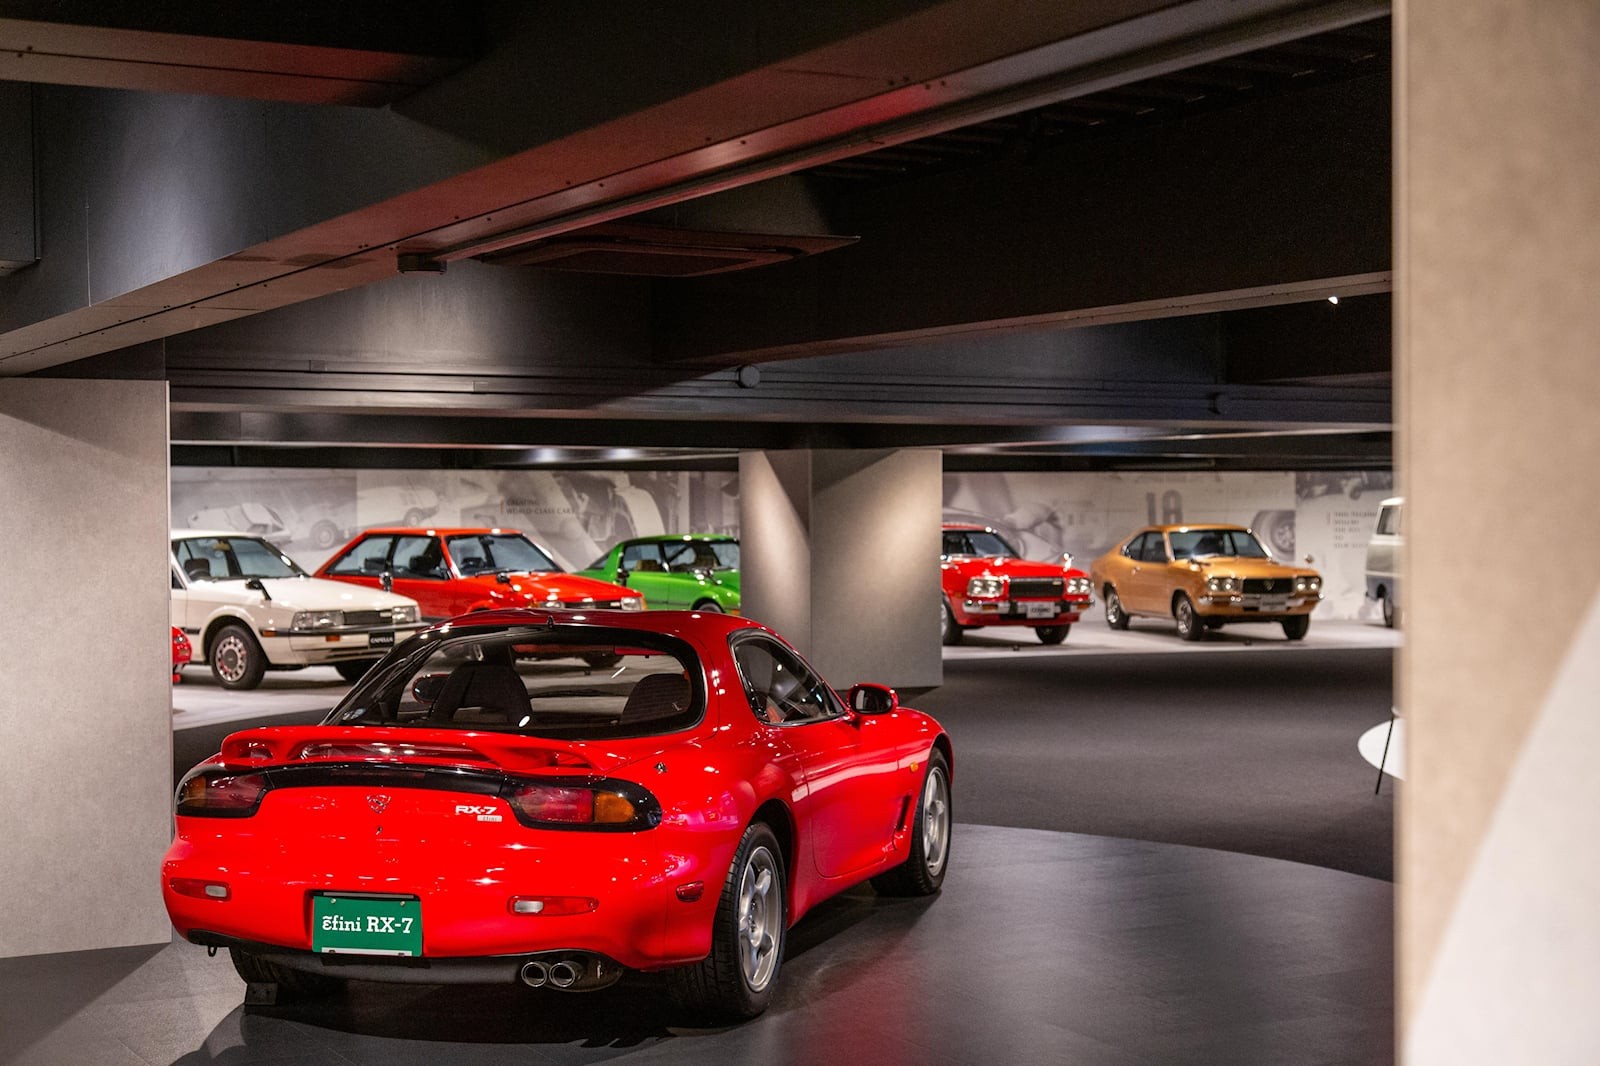 Khám phá bảo tàng của Mazda tại Nhật Bản - Ảnh 8.